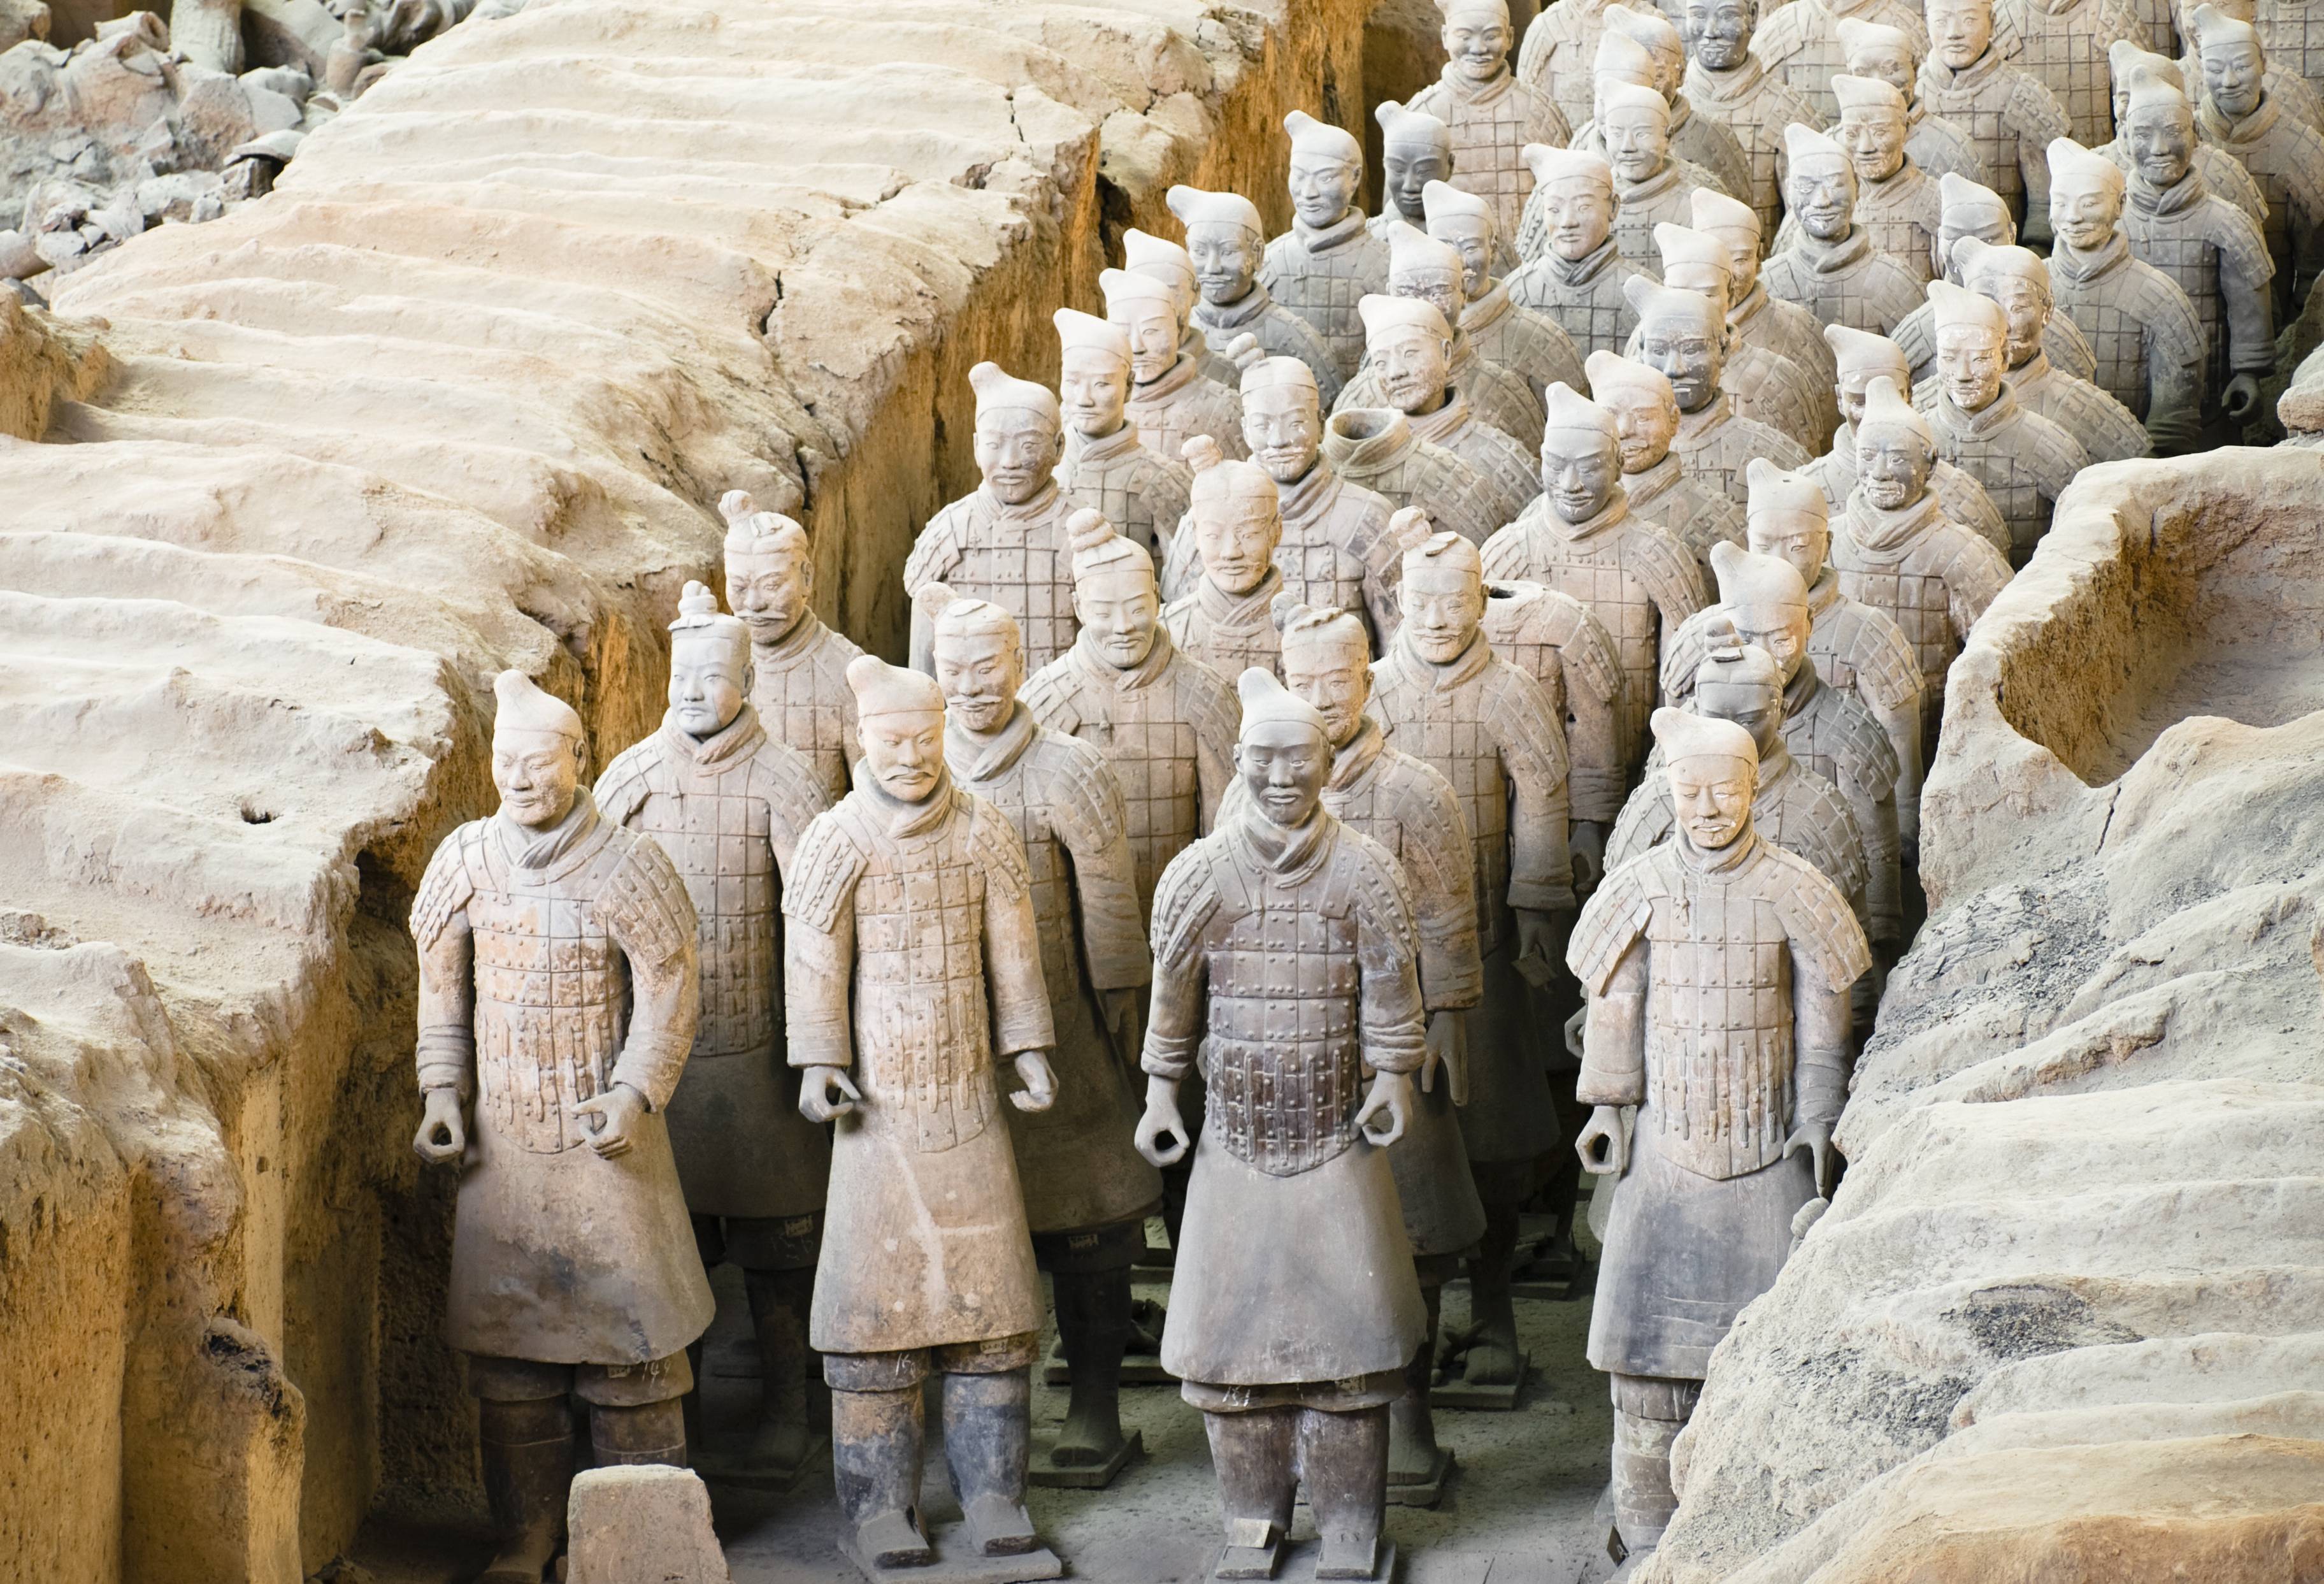 bang logboek Fraude Terracotta Leger in Xi'an | Halve dagtour - 333travel